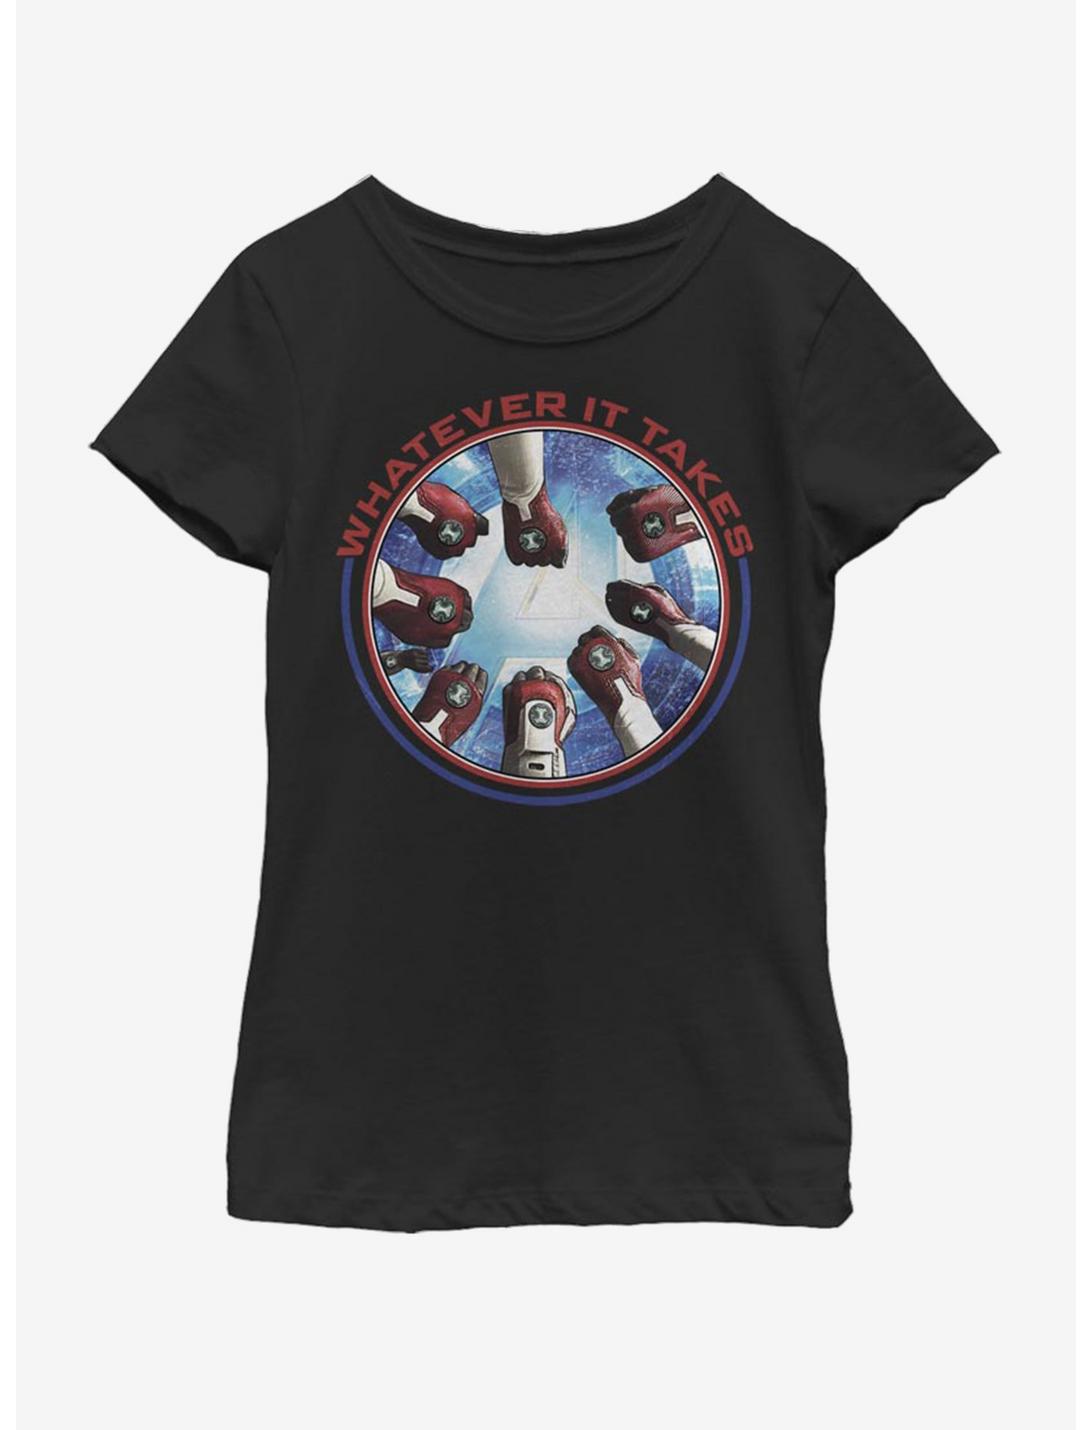 Marvel Avengers: Endgame Avengers Hands Youth Girls T-Shirt, BLACK, hi-res